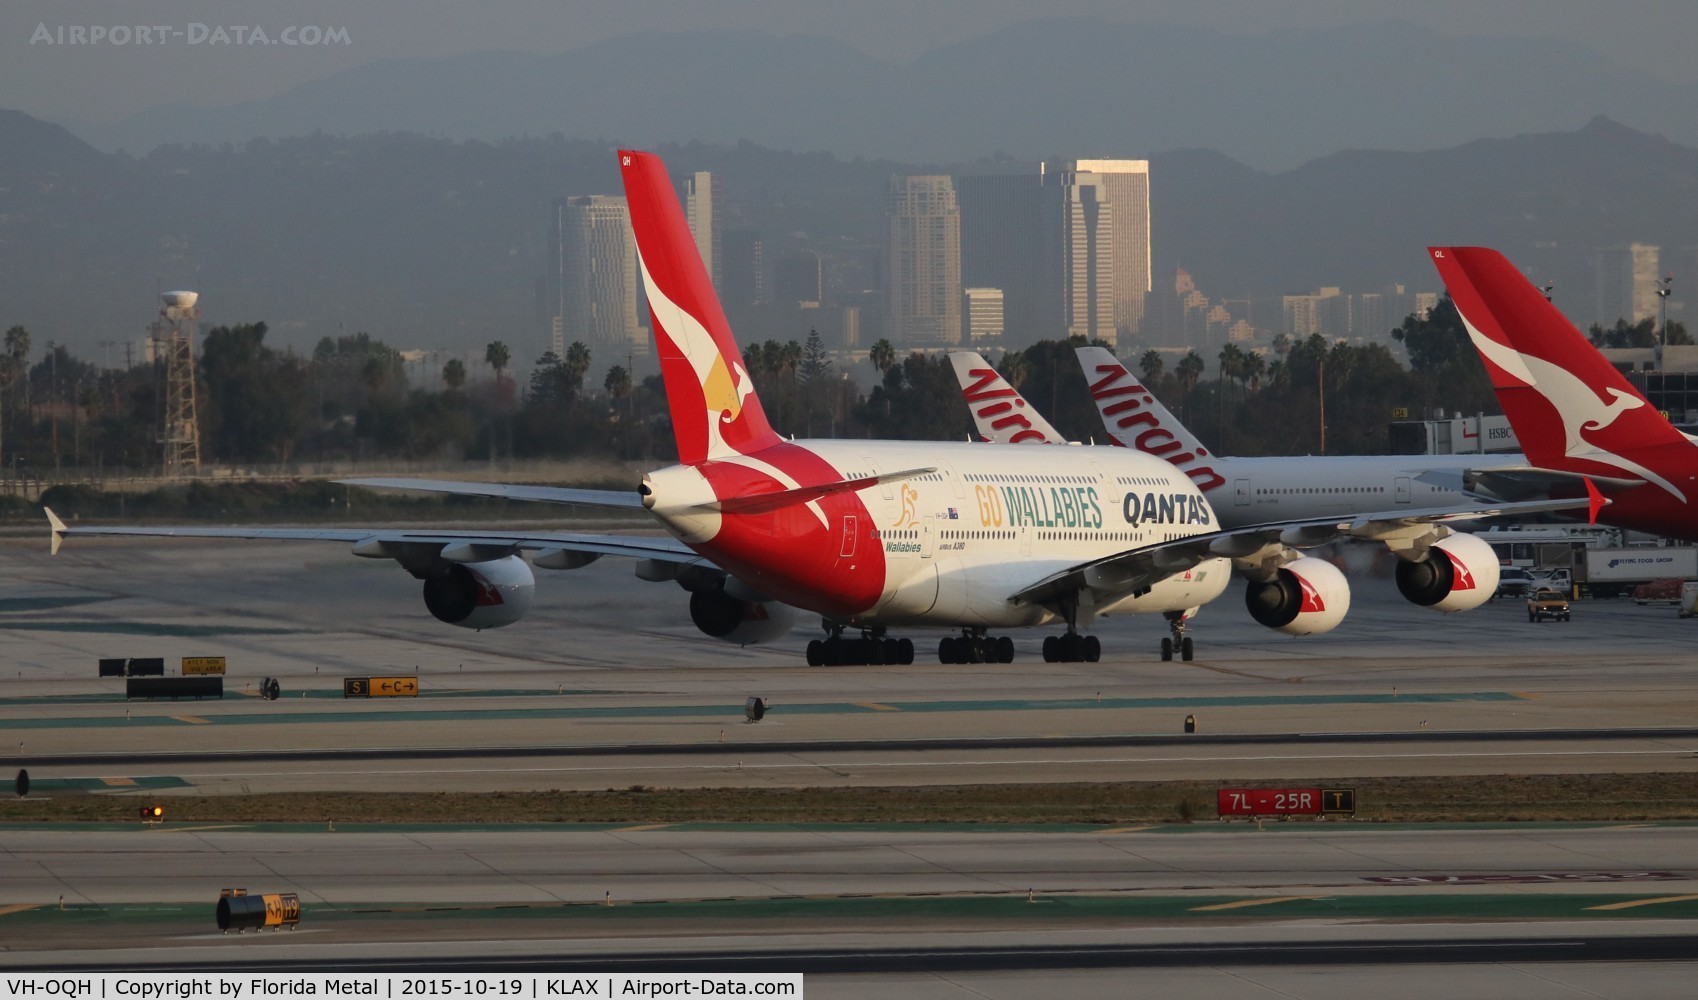 VH-OQH, 2009 Airbus A380-842 C/N 050, Qantas A380